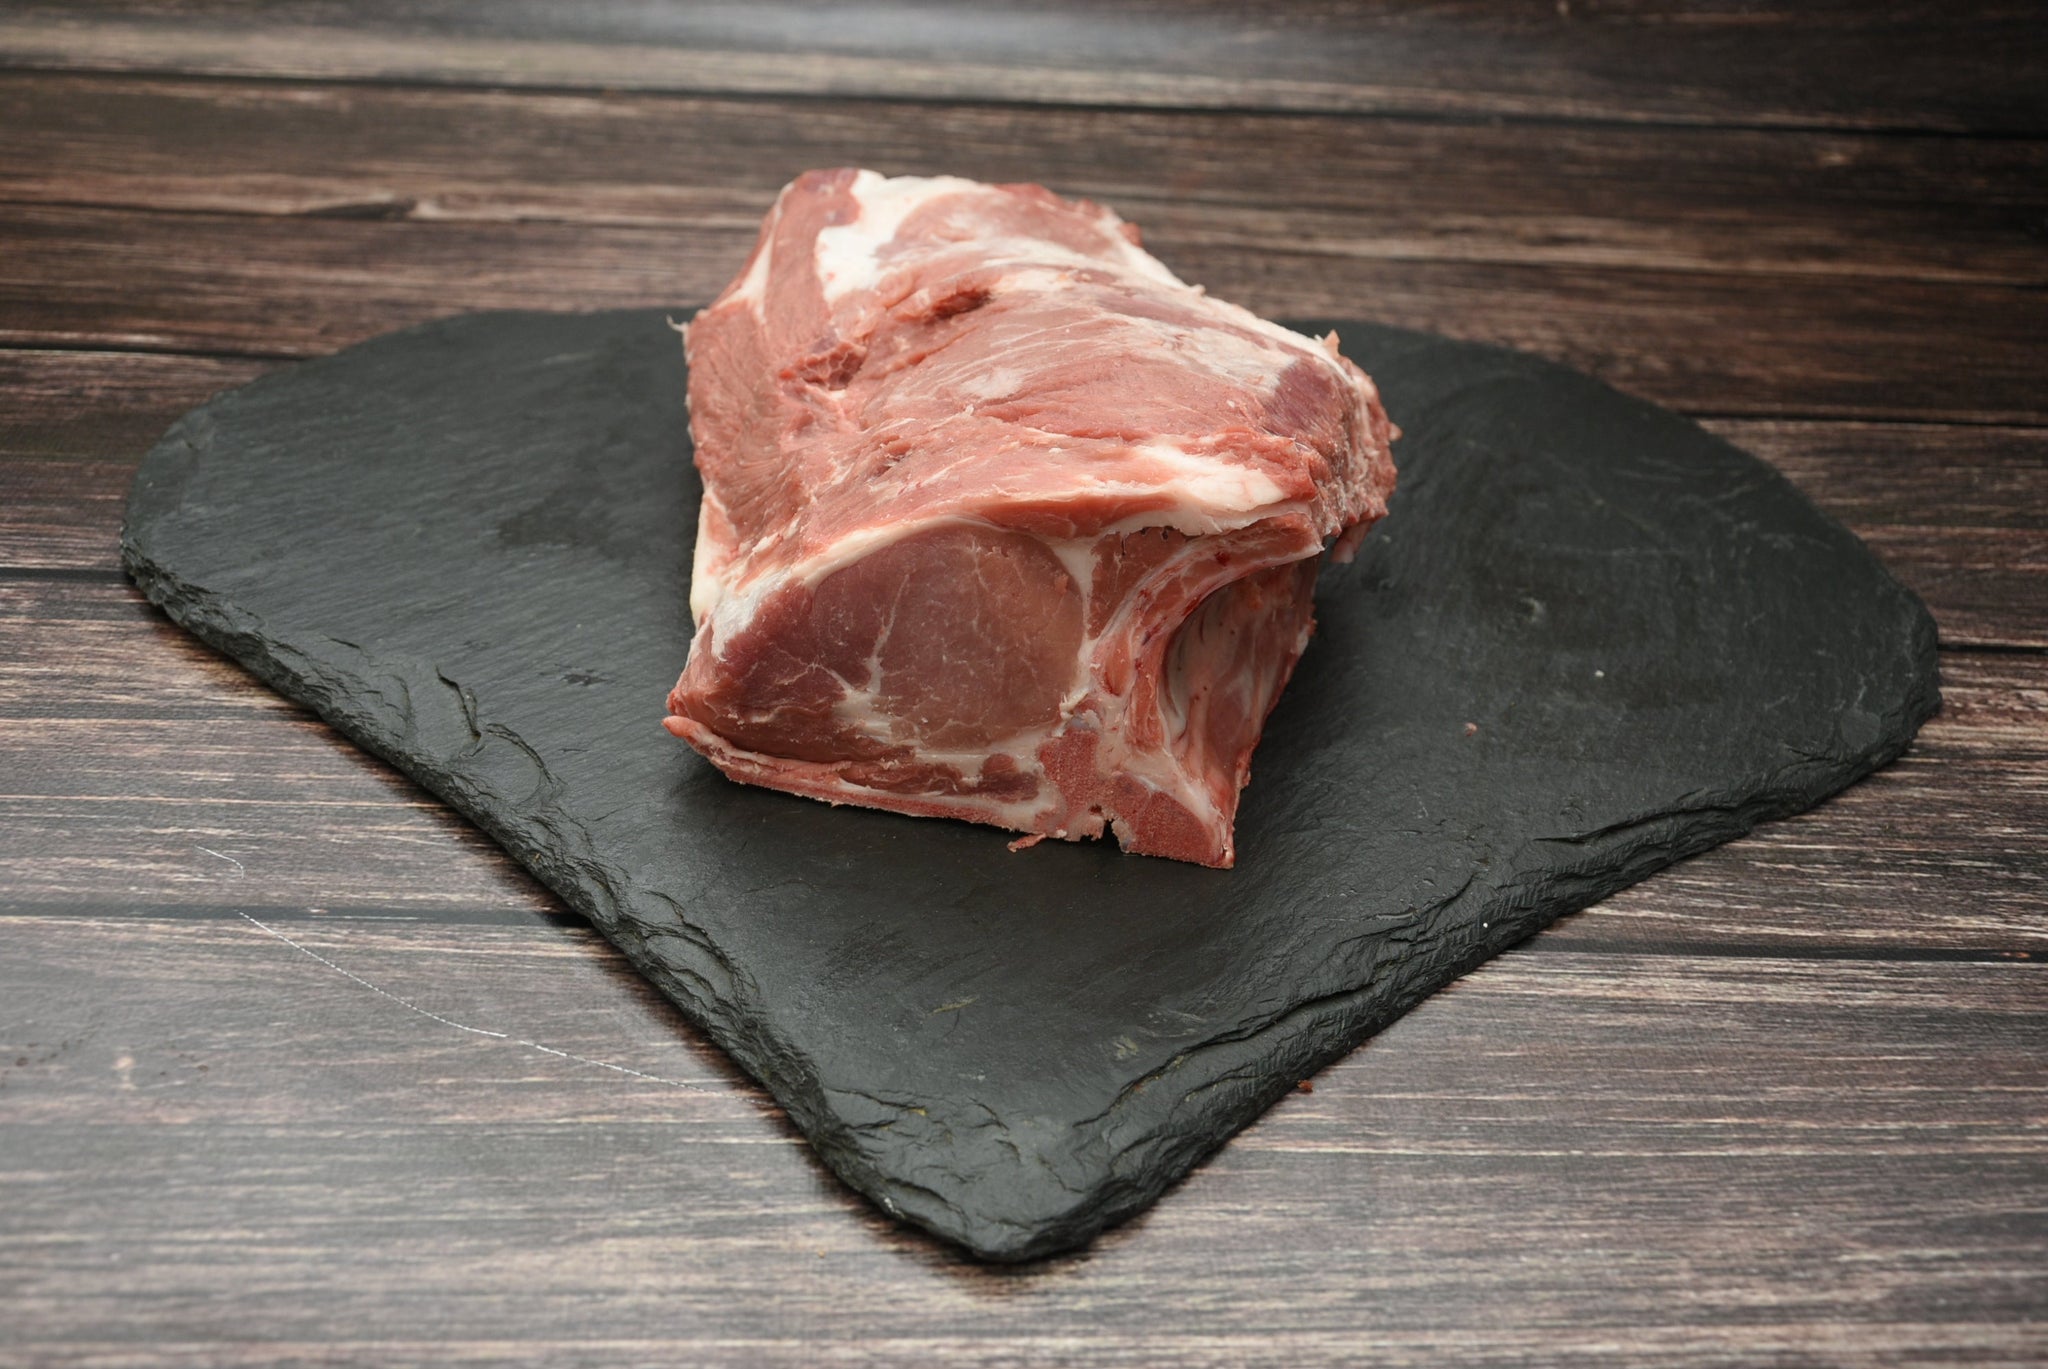 Schweinekamm mit Knochen, 250g Portion, Preis pro kg 17,90€ - Anzahlung